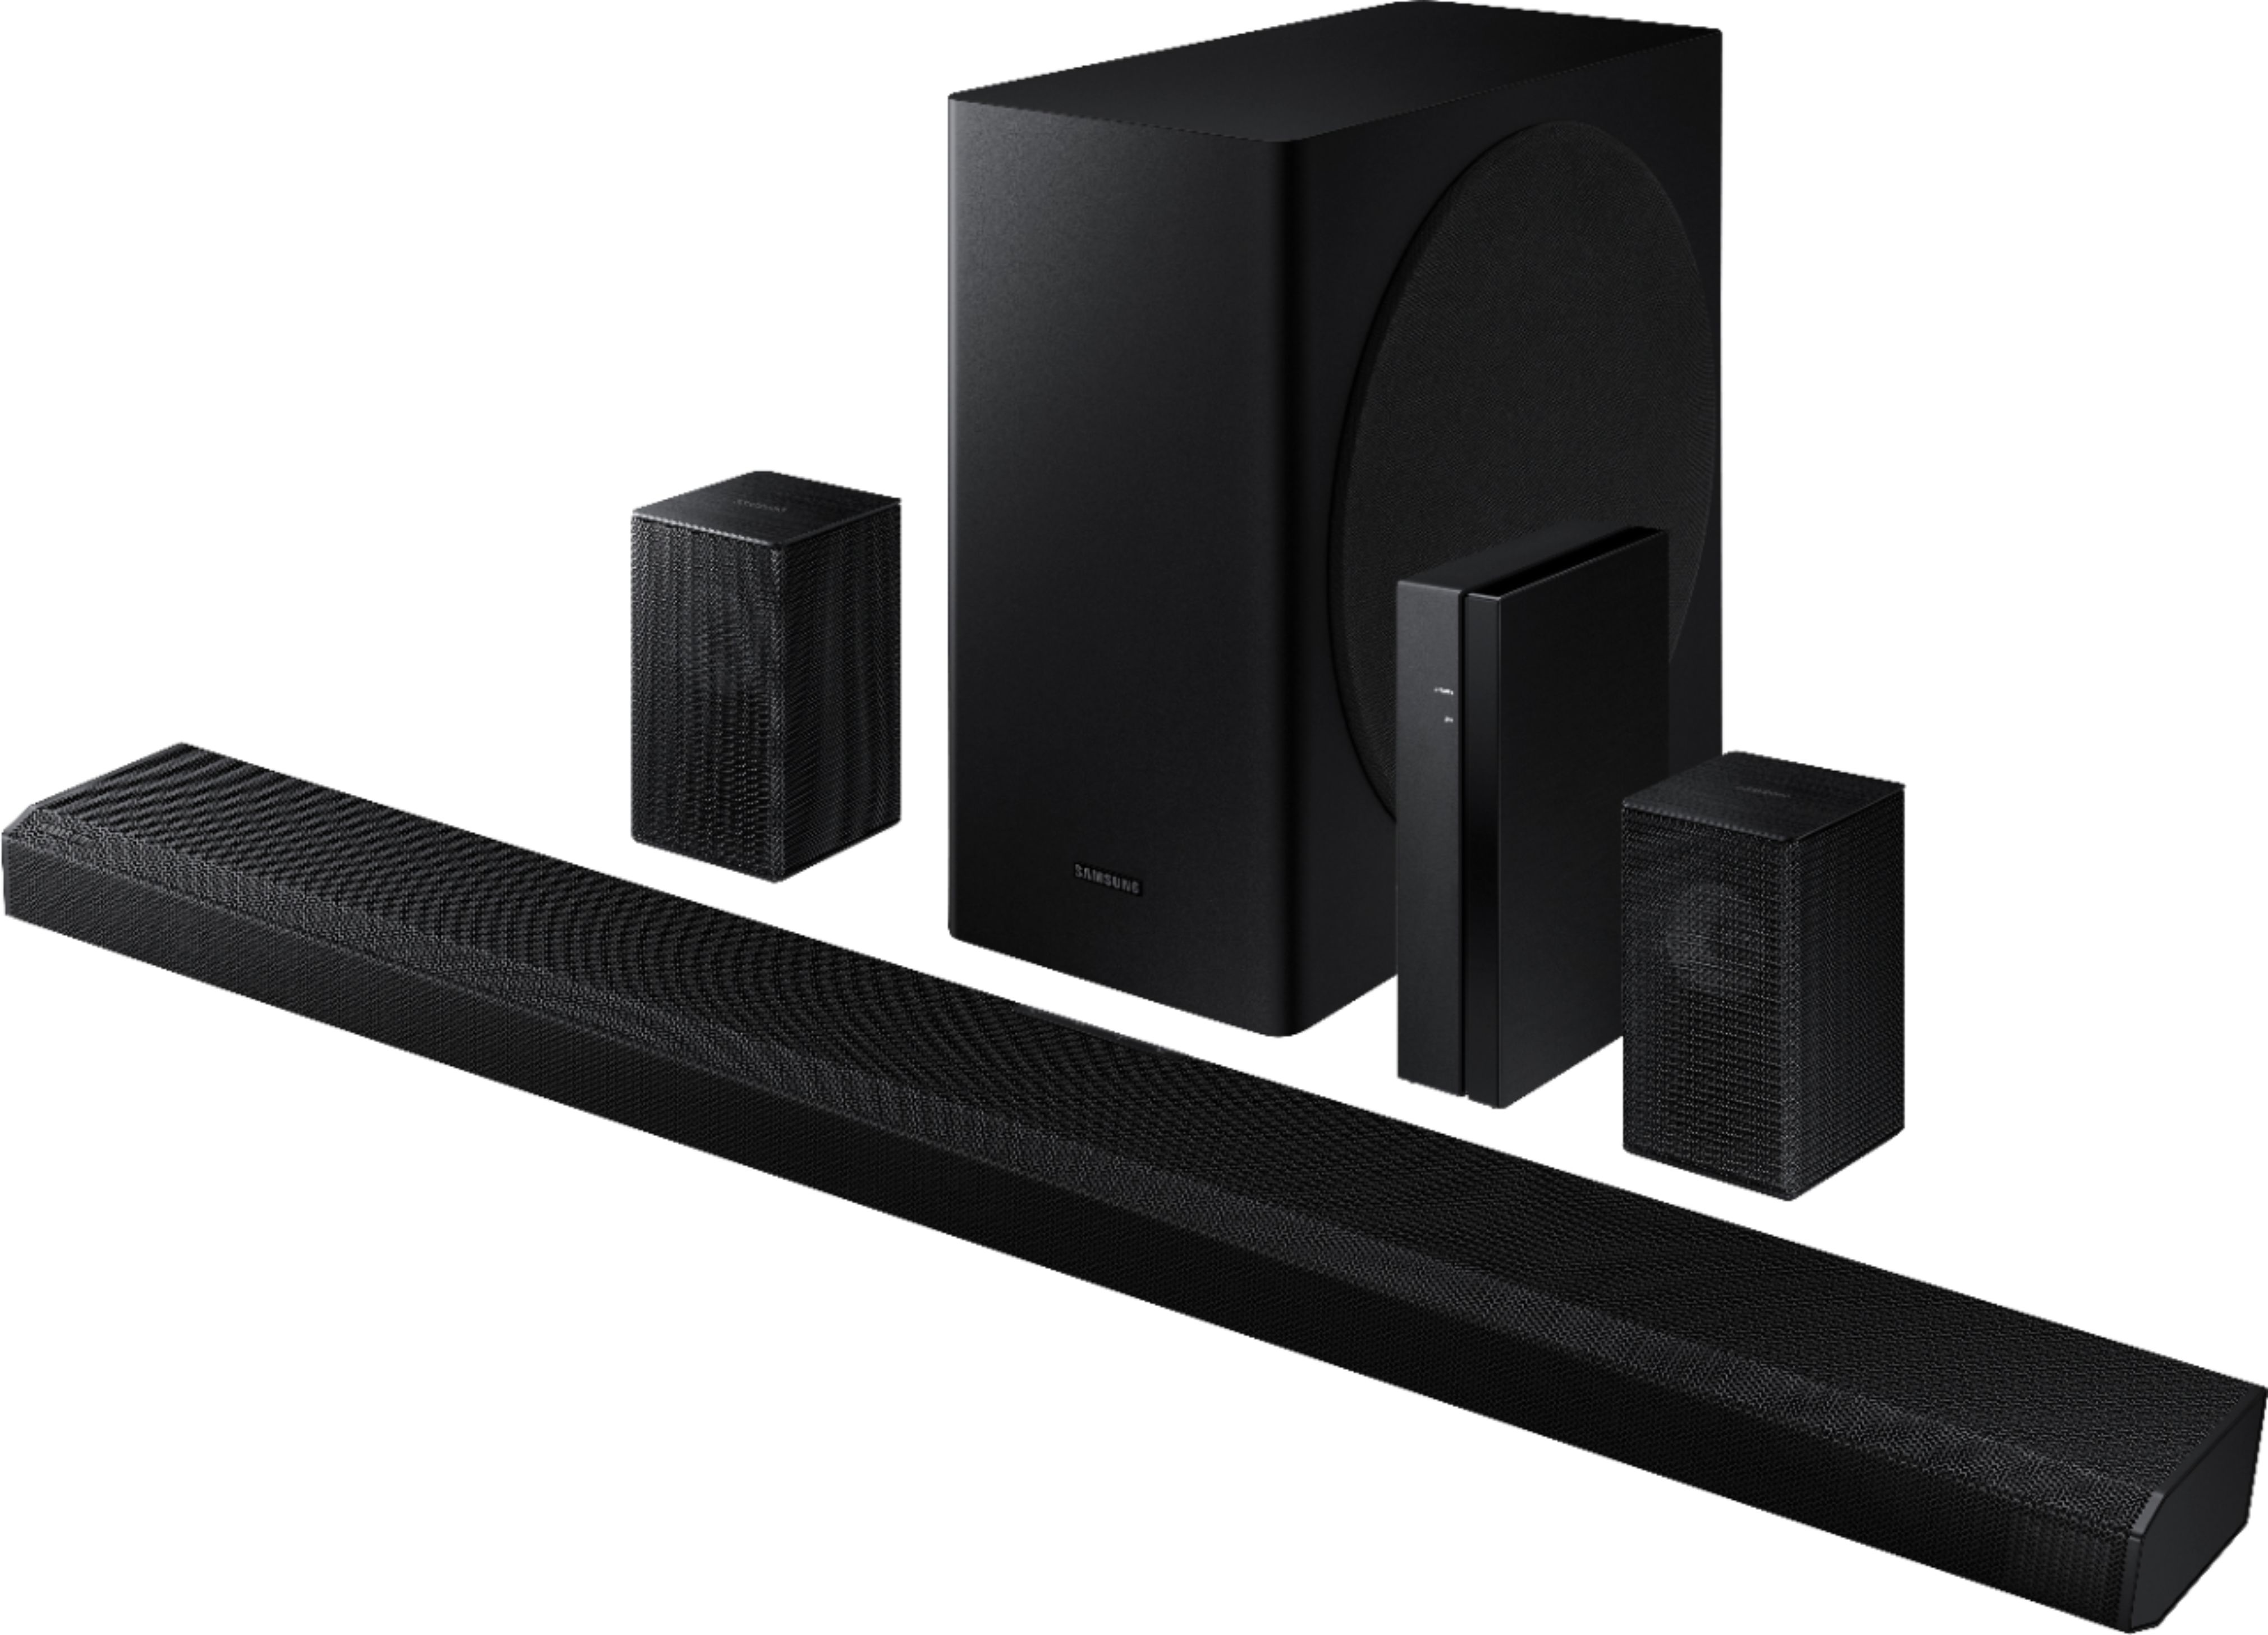 Antagelser, antagelser. Gætte samlet set pulsåre Best Buy: Samsung 5.1.2-Channel Soundbar with Wireless Rear Speakers and  Dolby Atmos/DTS:X Black HW-Q850T/ZA